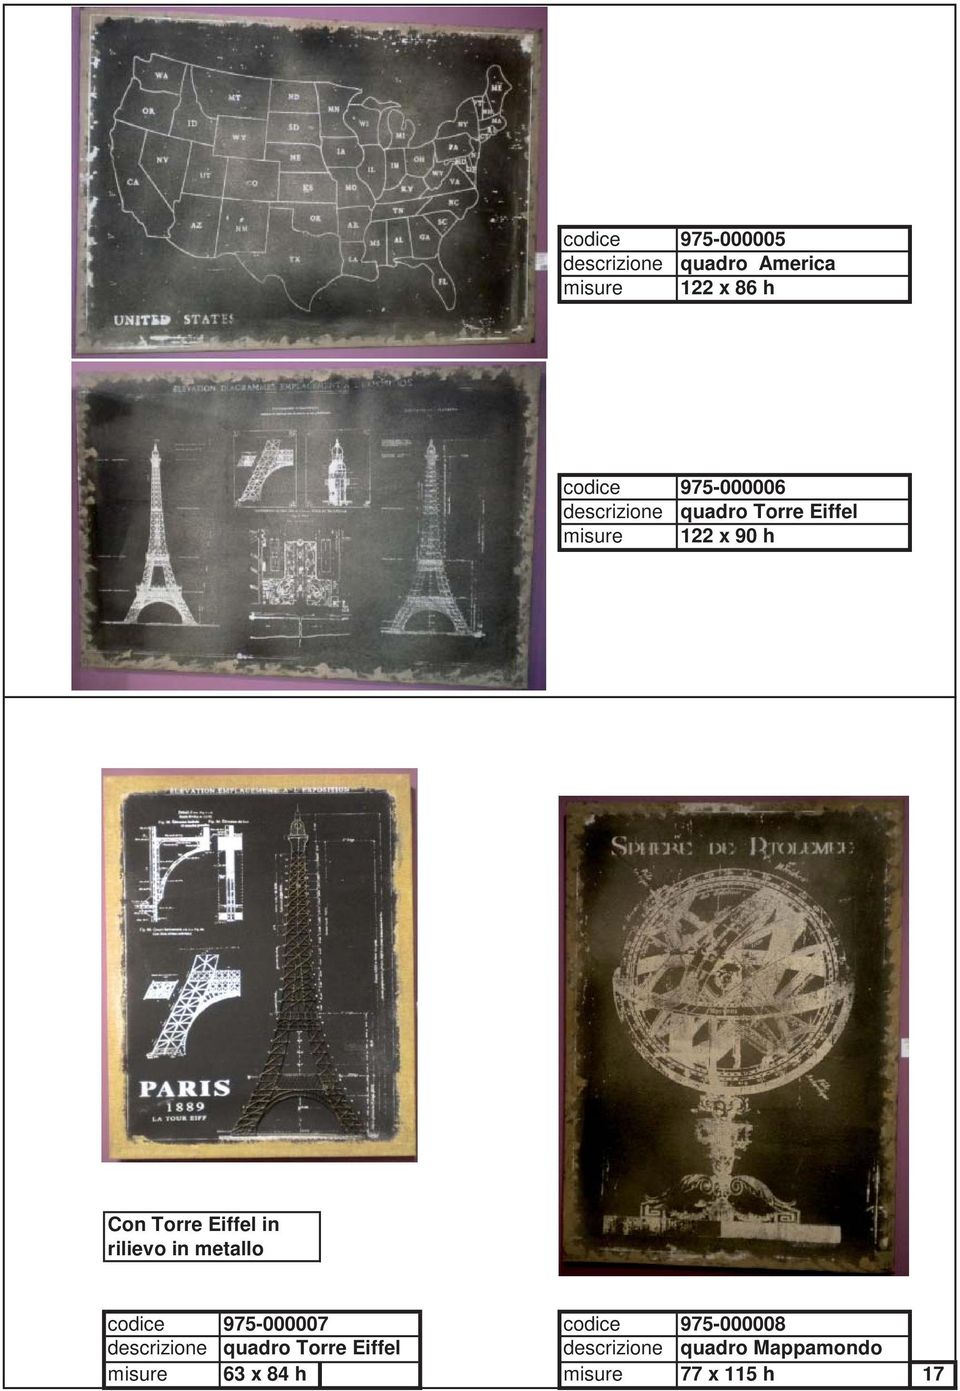 Eiffel in rilievo in metallo codice 975-000007 codice 975-000008 descrizione